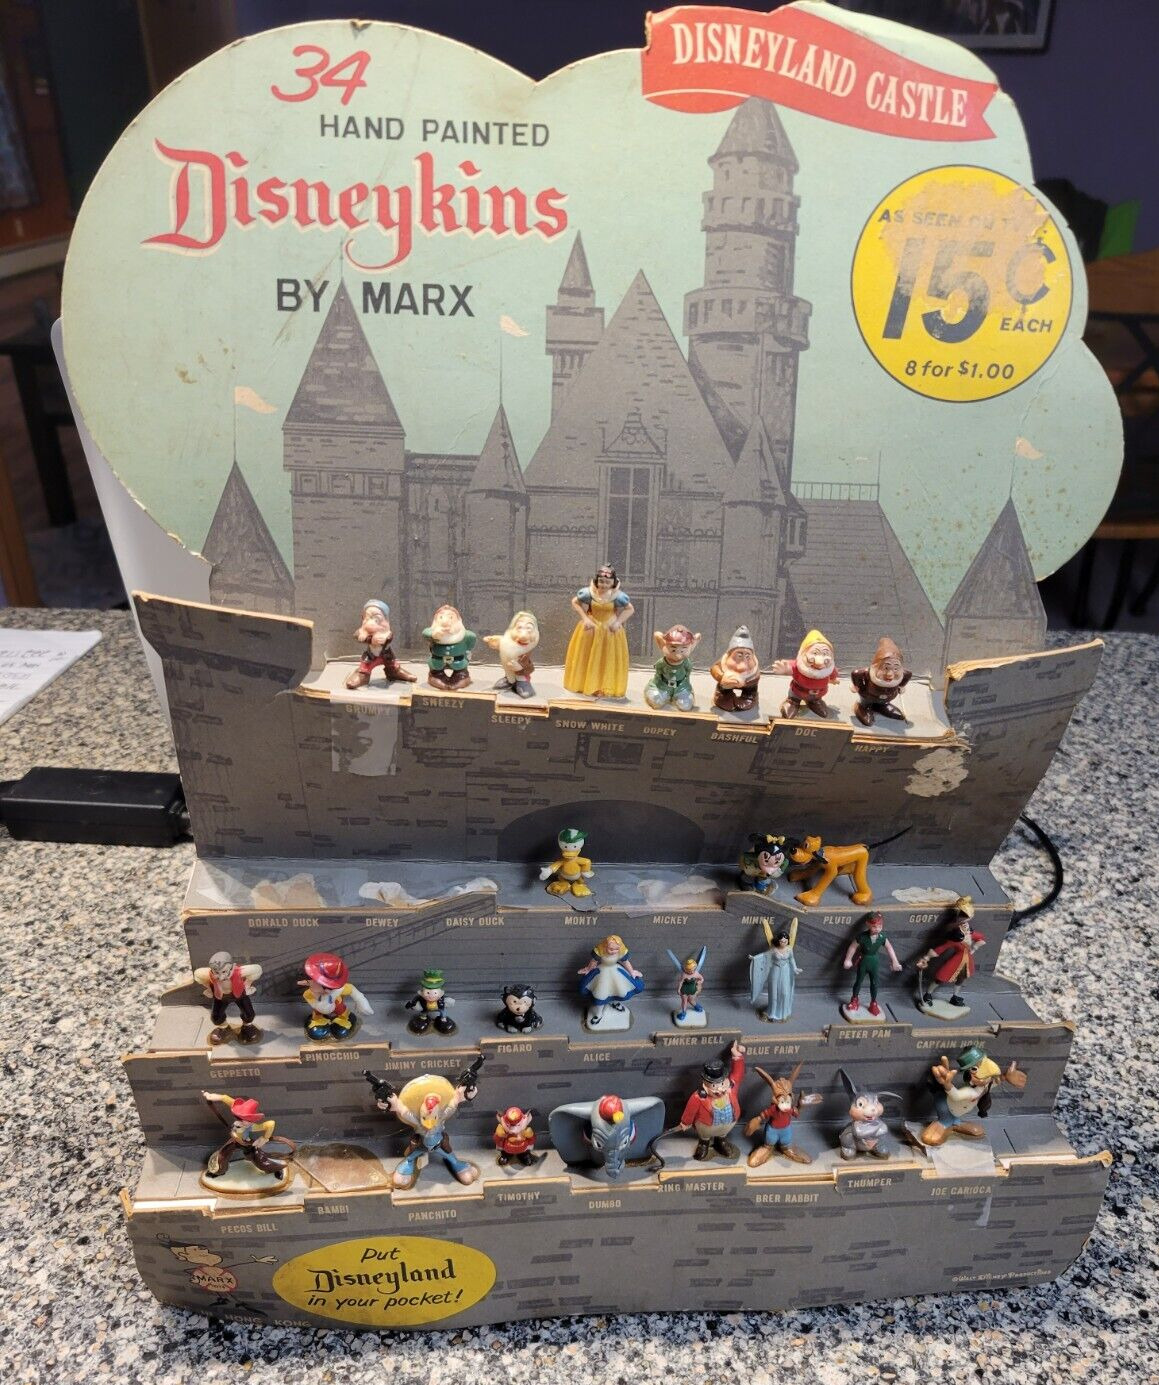 Vintage DISNEY Display Of DISNEYKINS by MARX 1960 Handpainted Figurines